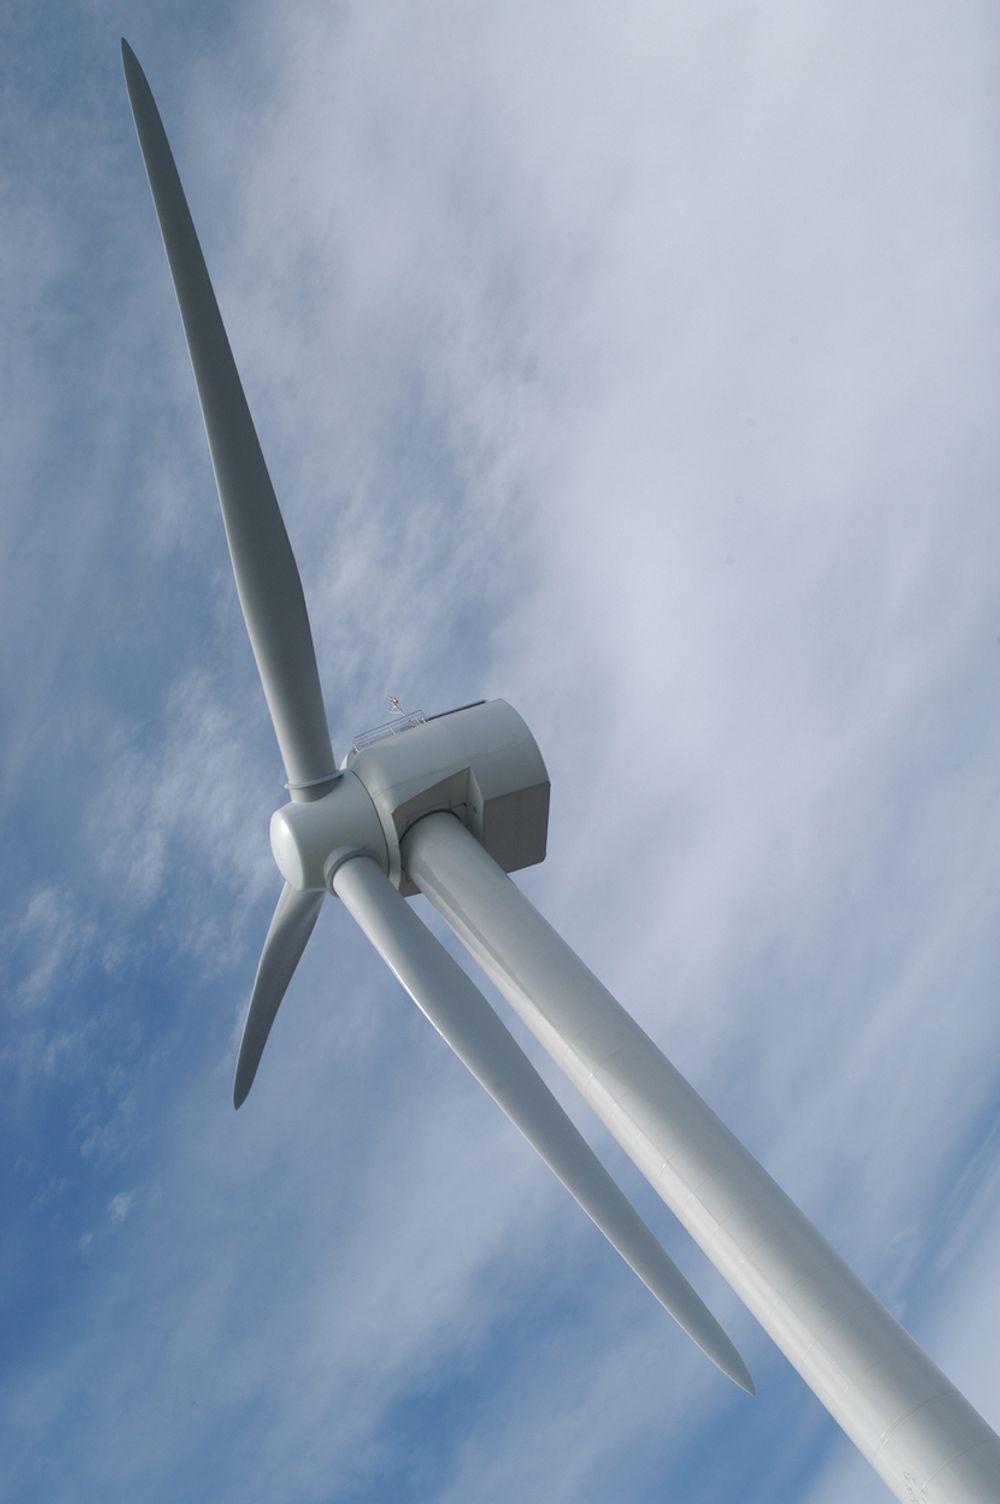 NYE BLADER: Etter en grundig testperiode er det klar for regulær drift av Scanwind-turbinene på Hundhammerfjellet. Bildet viser den første vindturbinen Scanwind satte opp.